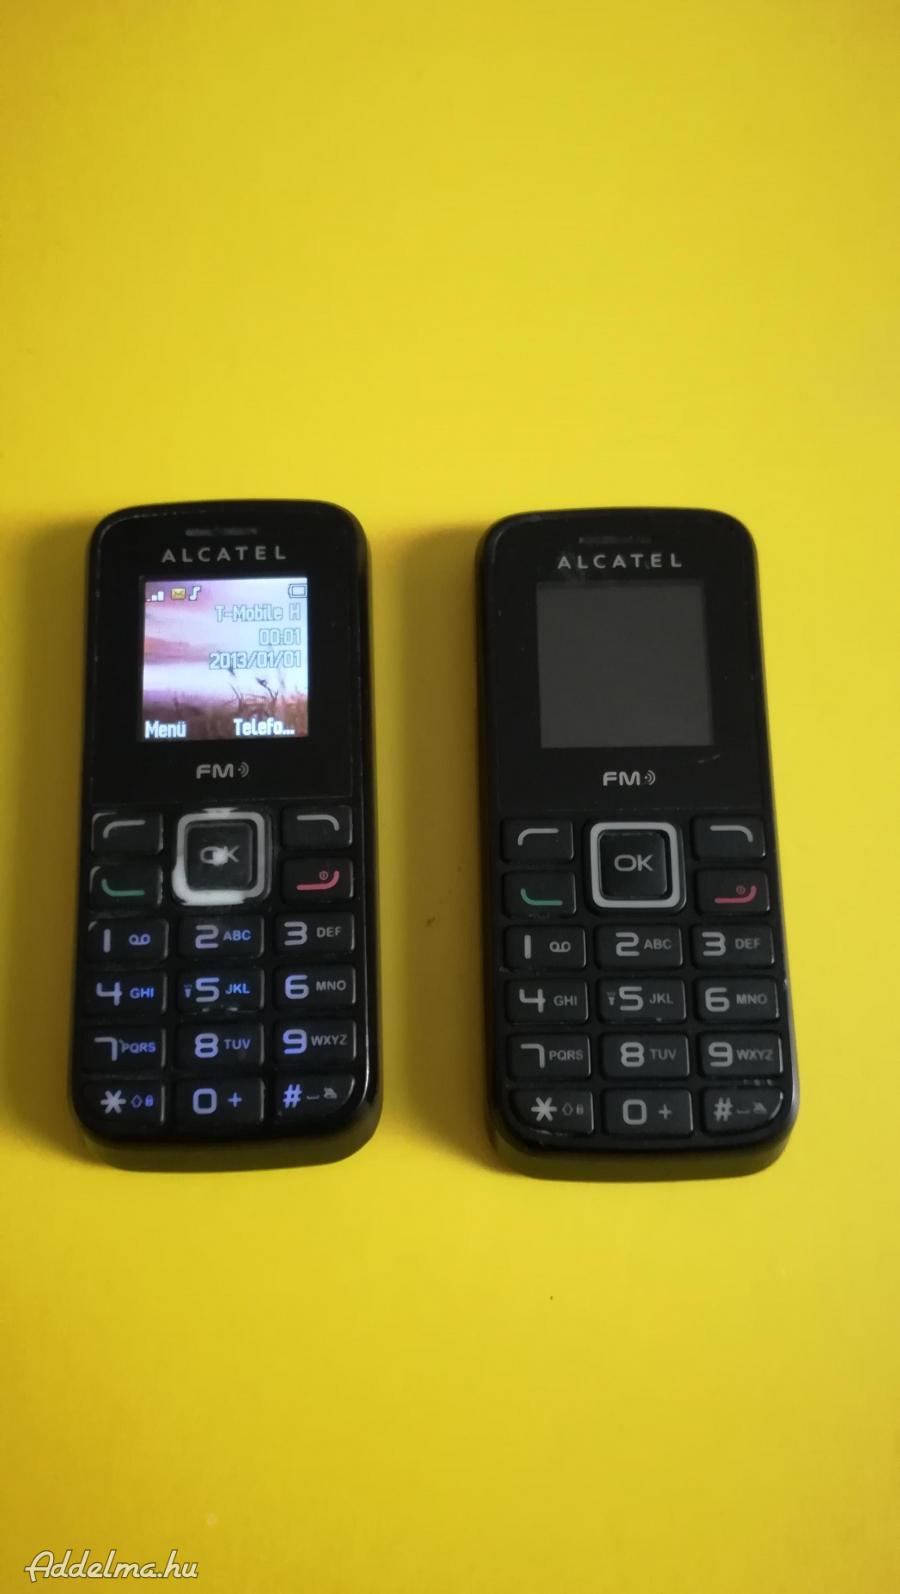 Alcatel 1010x mobil, 1. jó telekomos, 2. jó vodás.